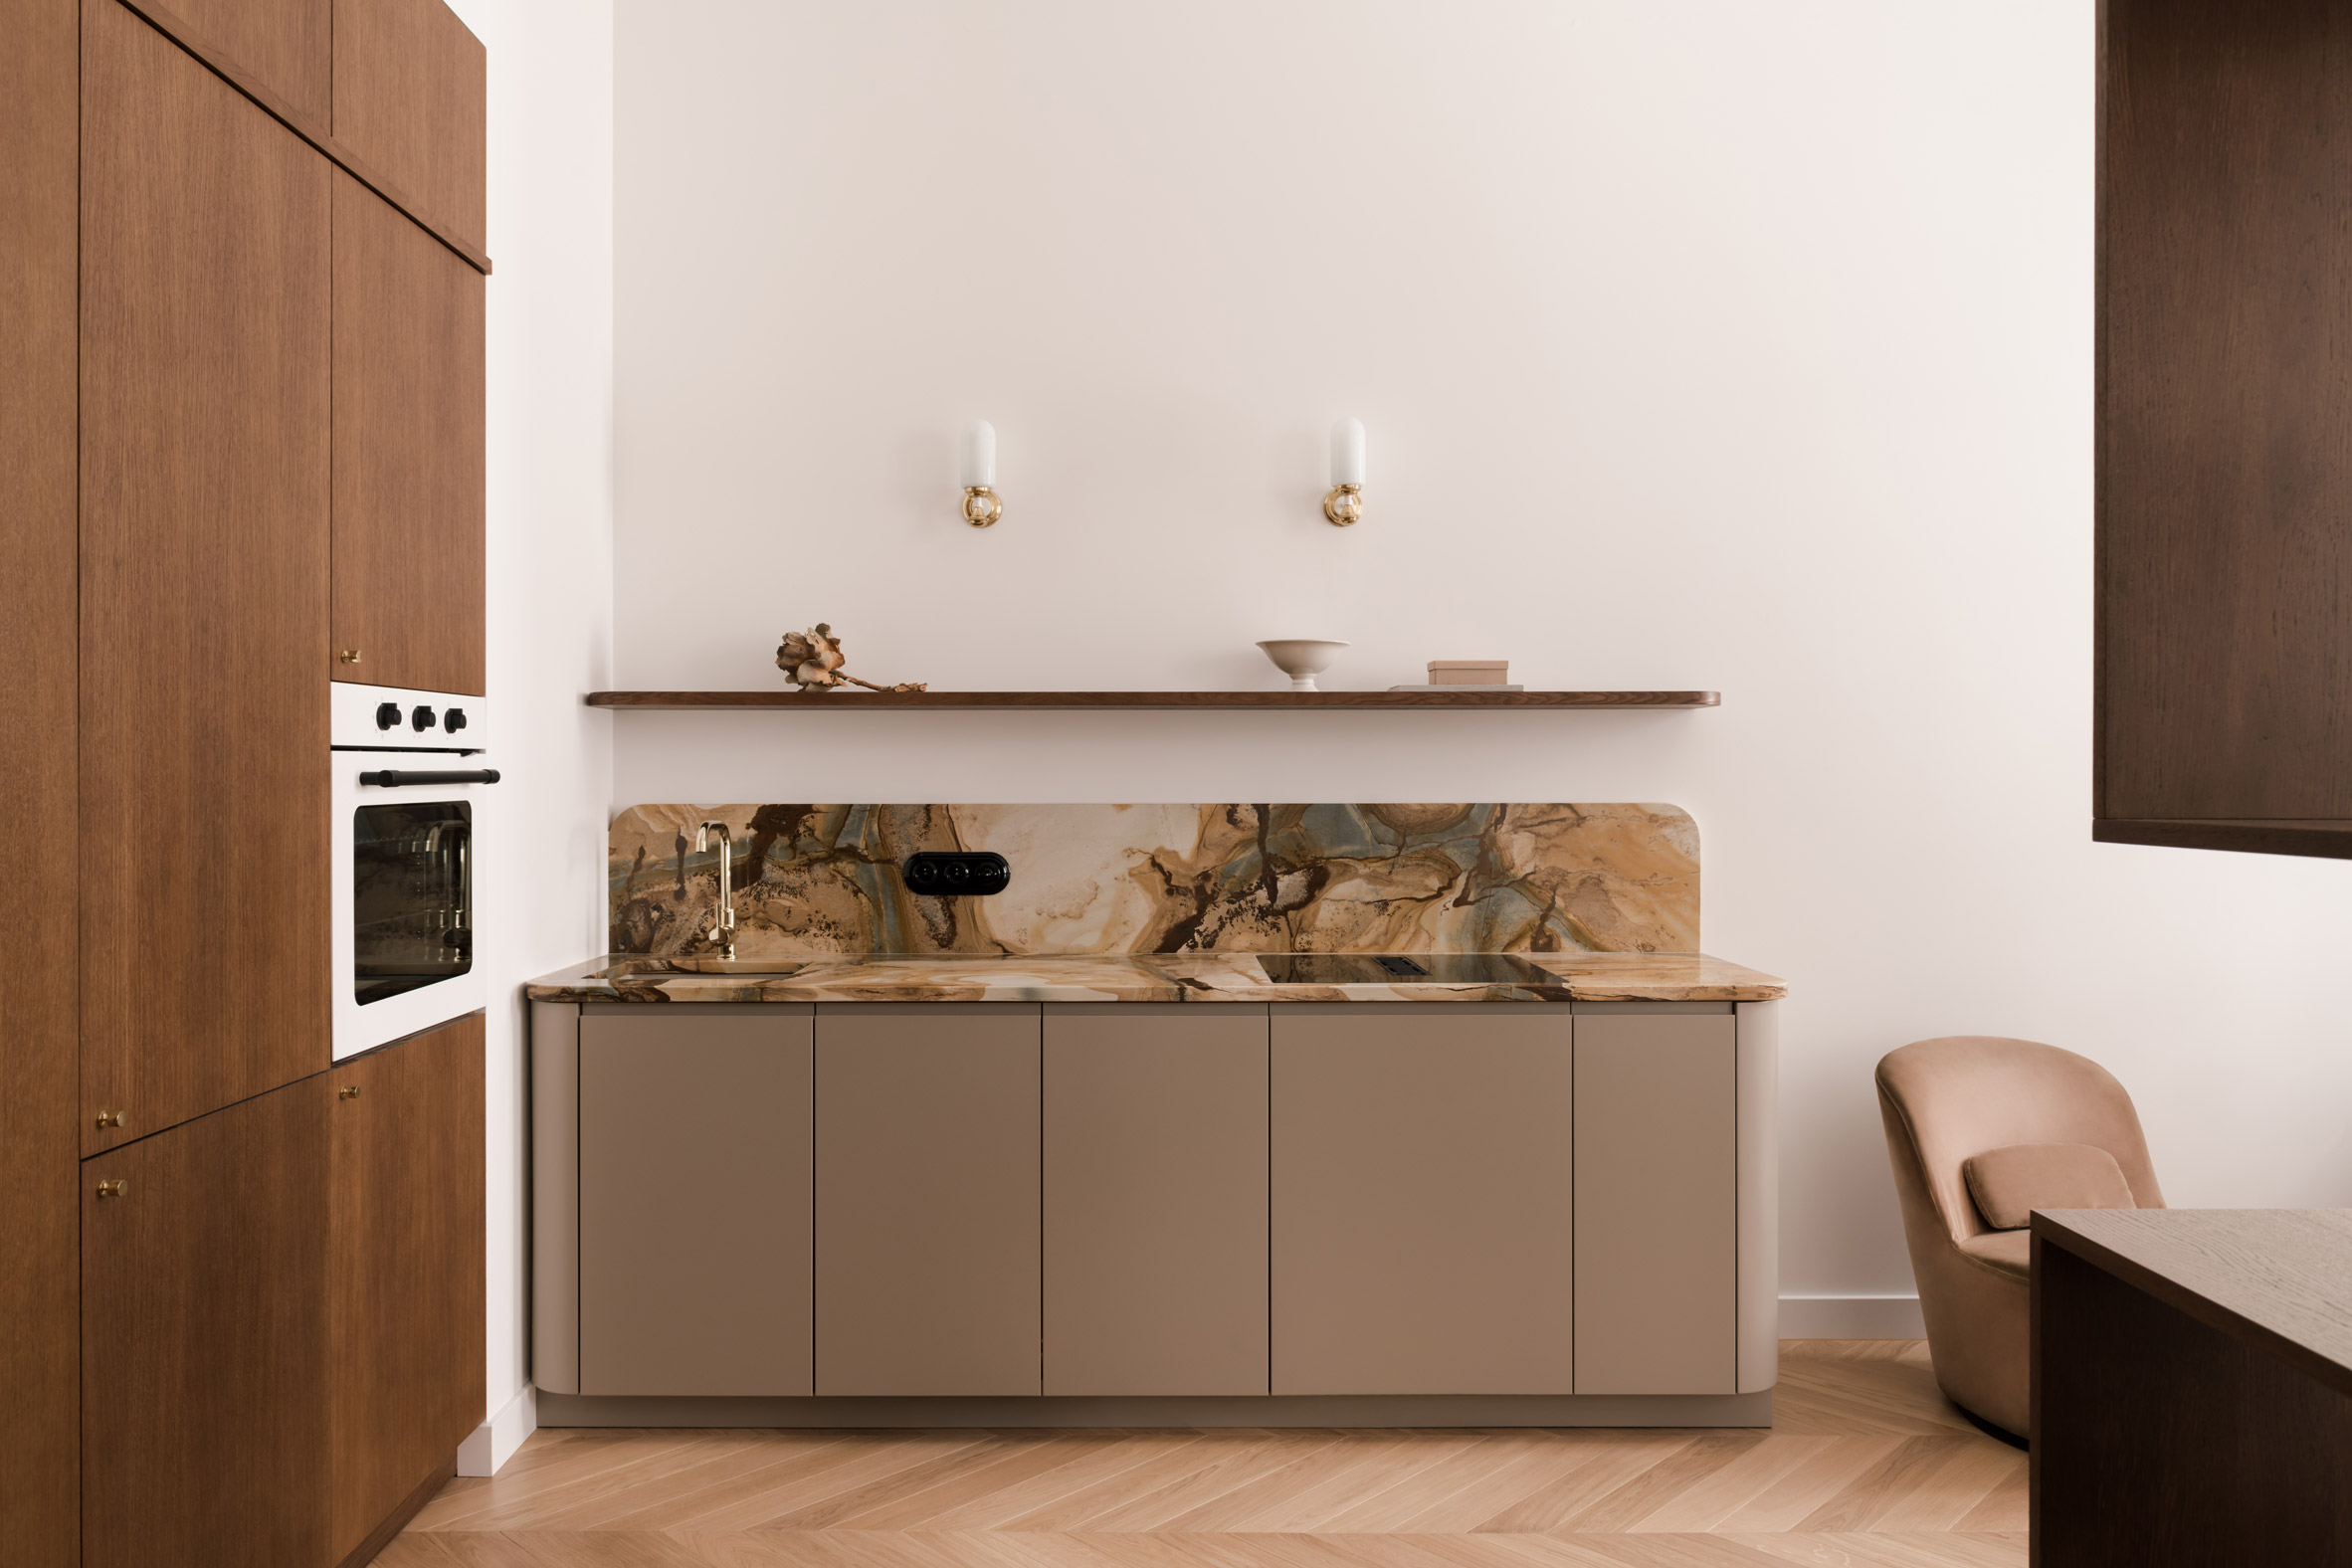 Quartzite kitchen counter